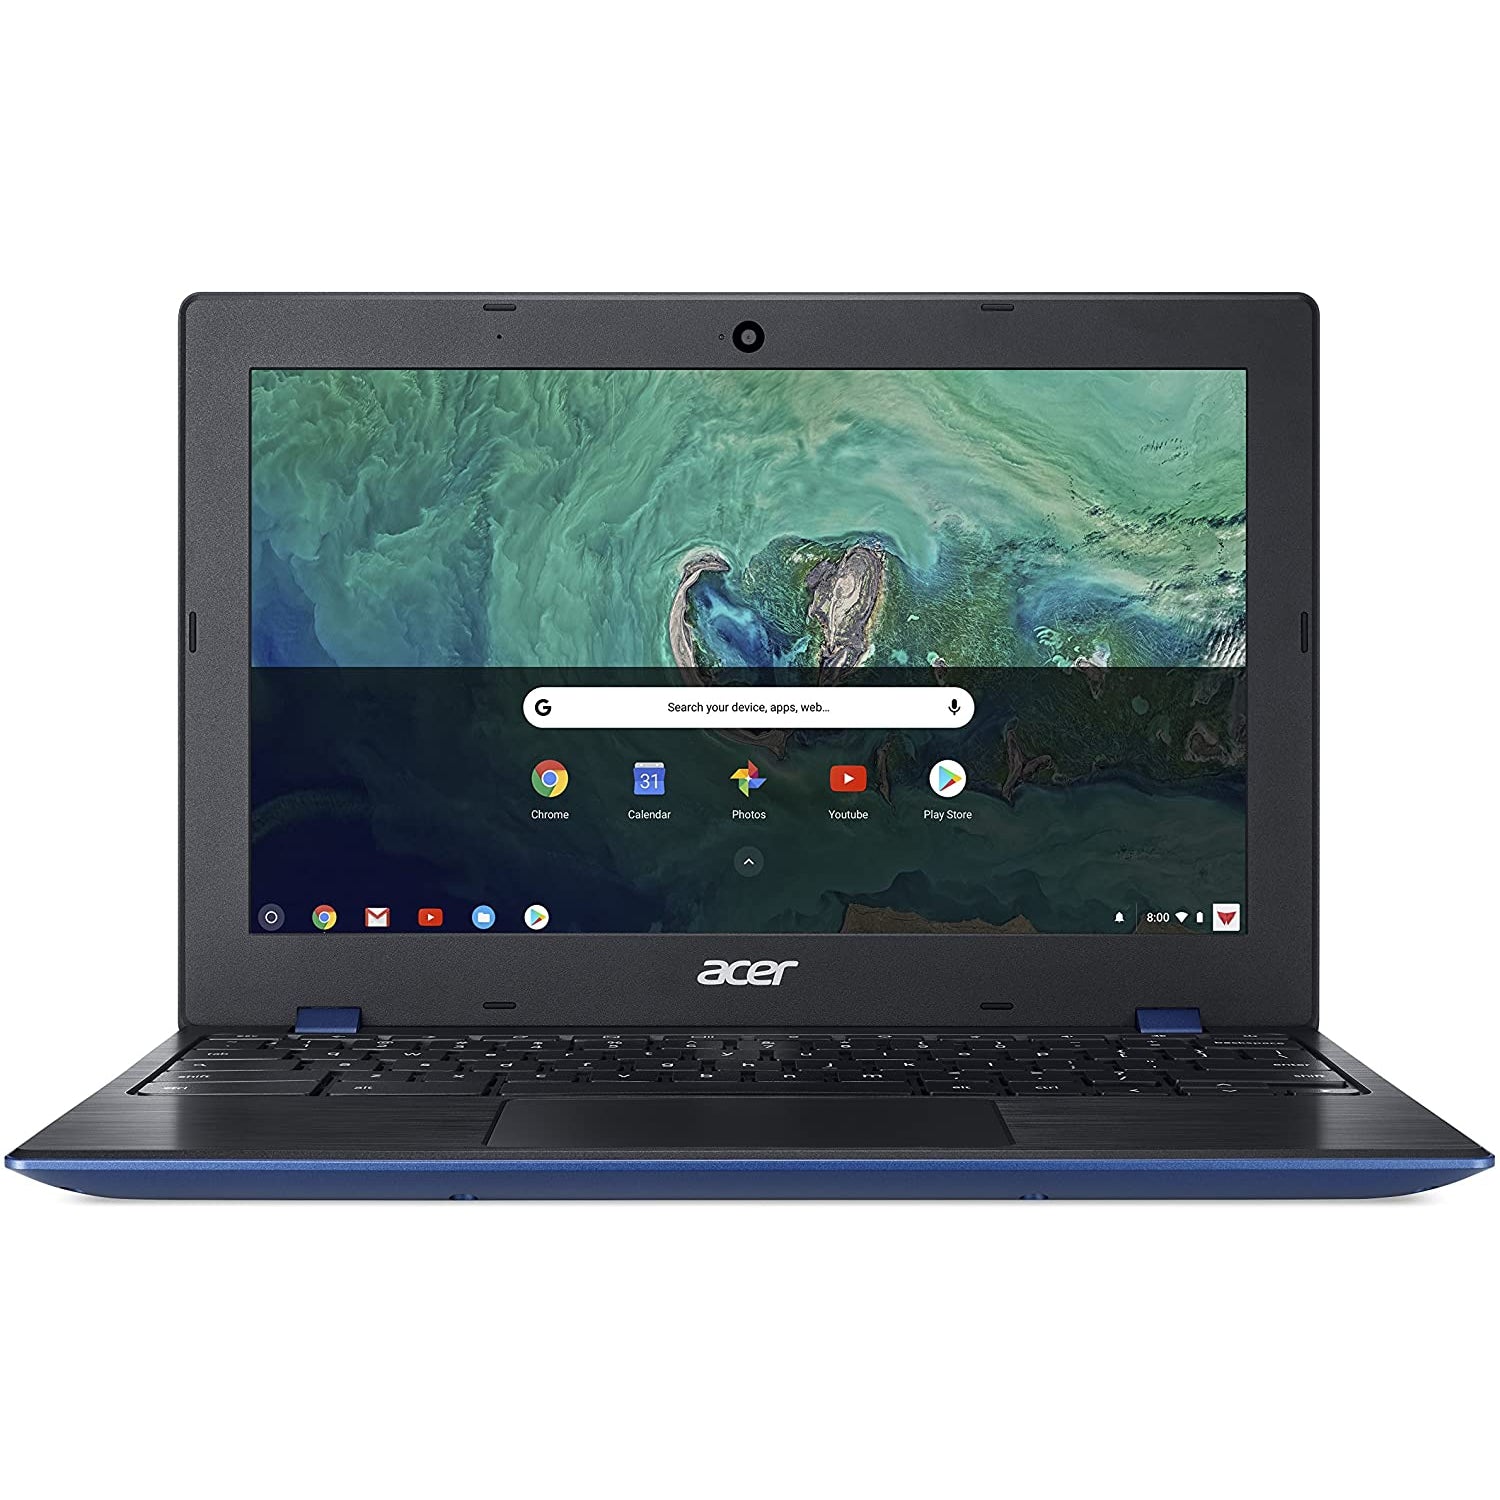 Acer Chromebook 11 CB311-8HT - Intel Celeron, 4GB RAM, 32GB HDD, 11.6" - Blue